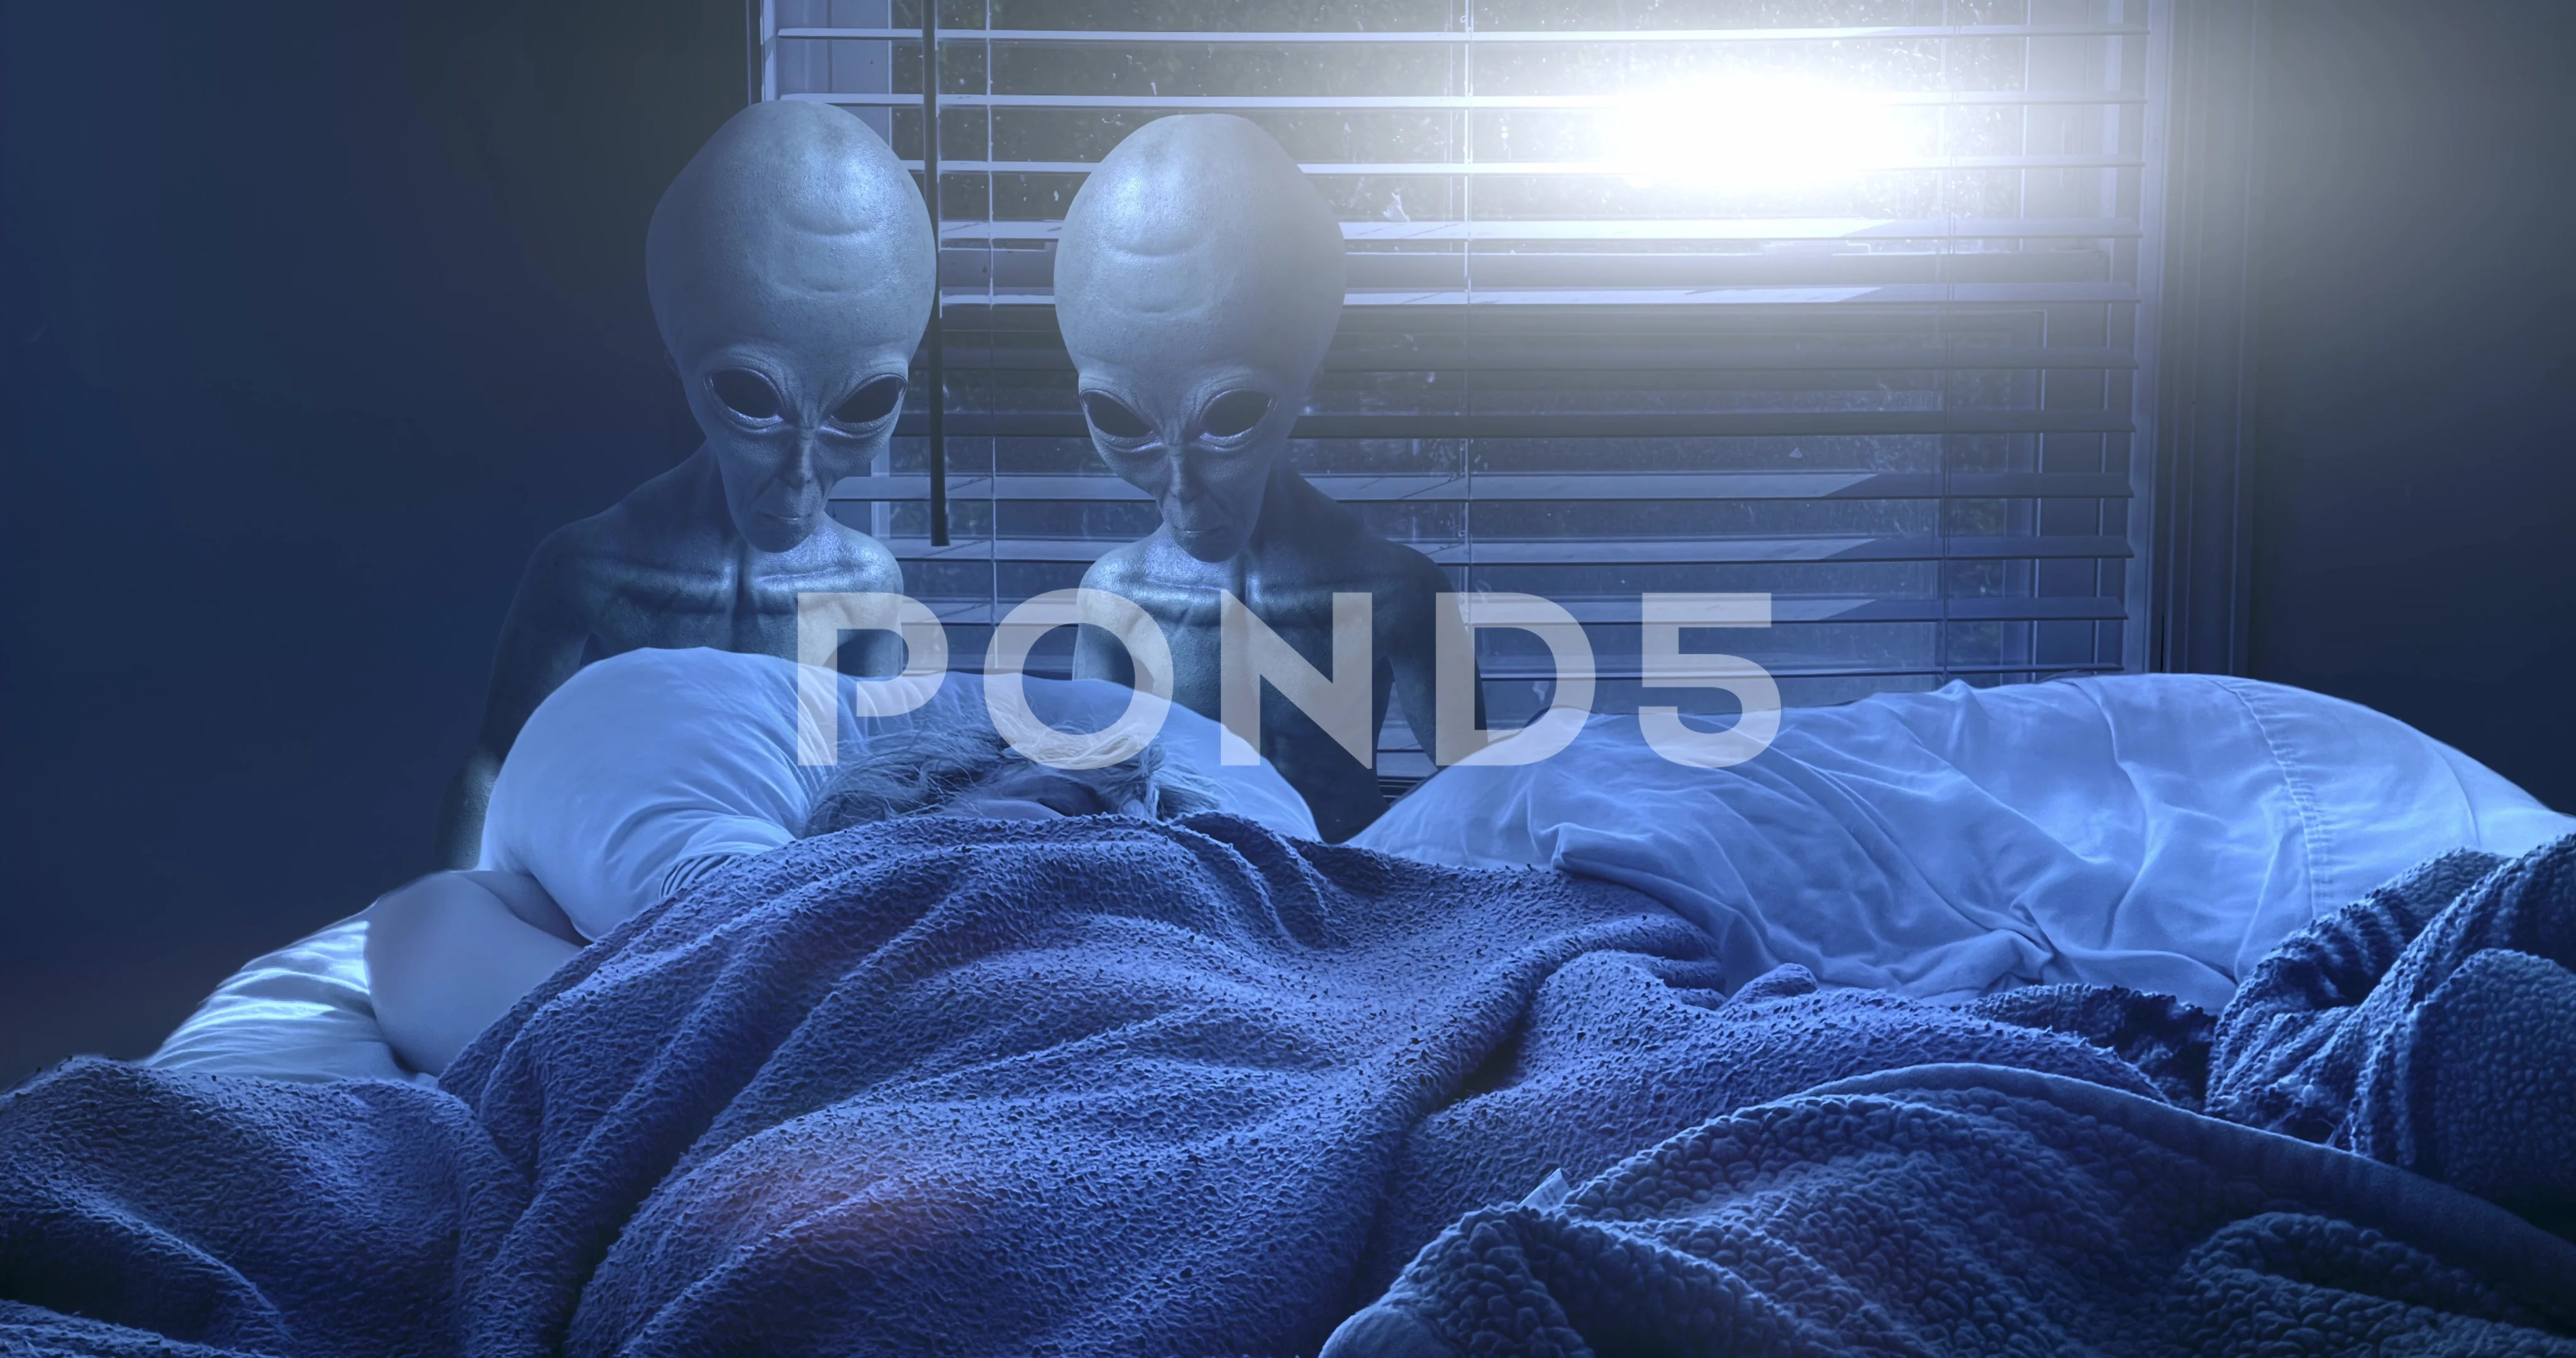 https://images.pond5.com/gray-aliens-bedroom-footage-161078873_prevstill.jpeg